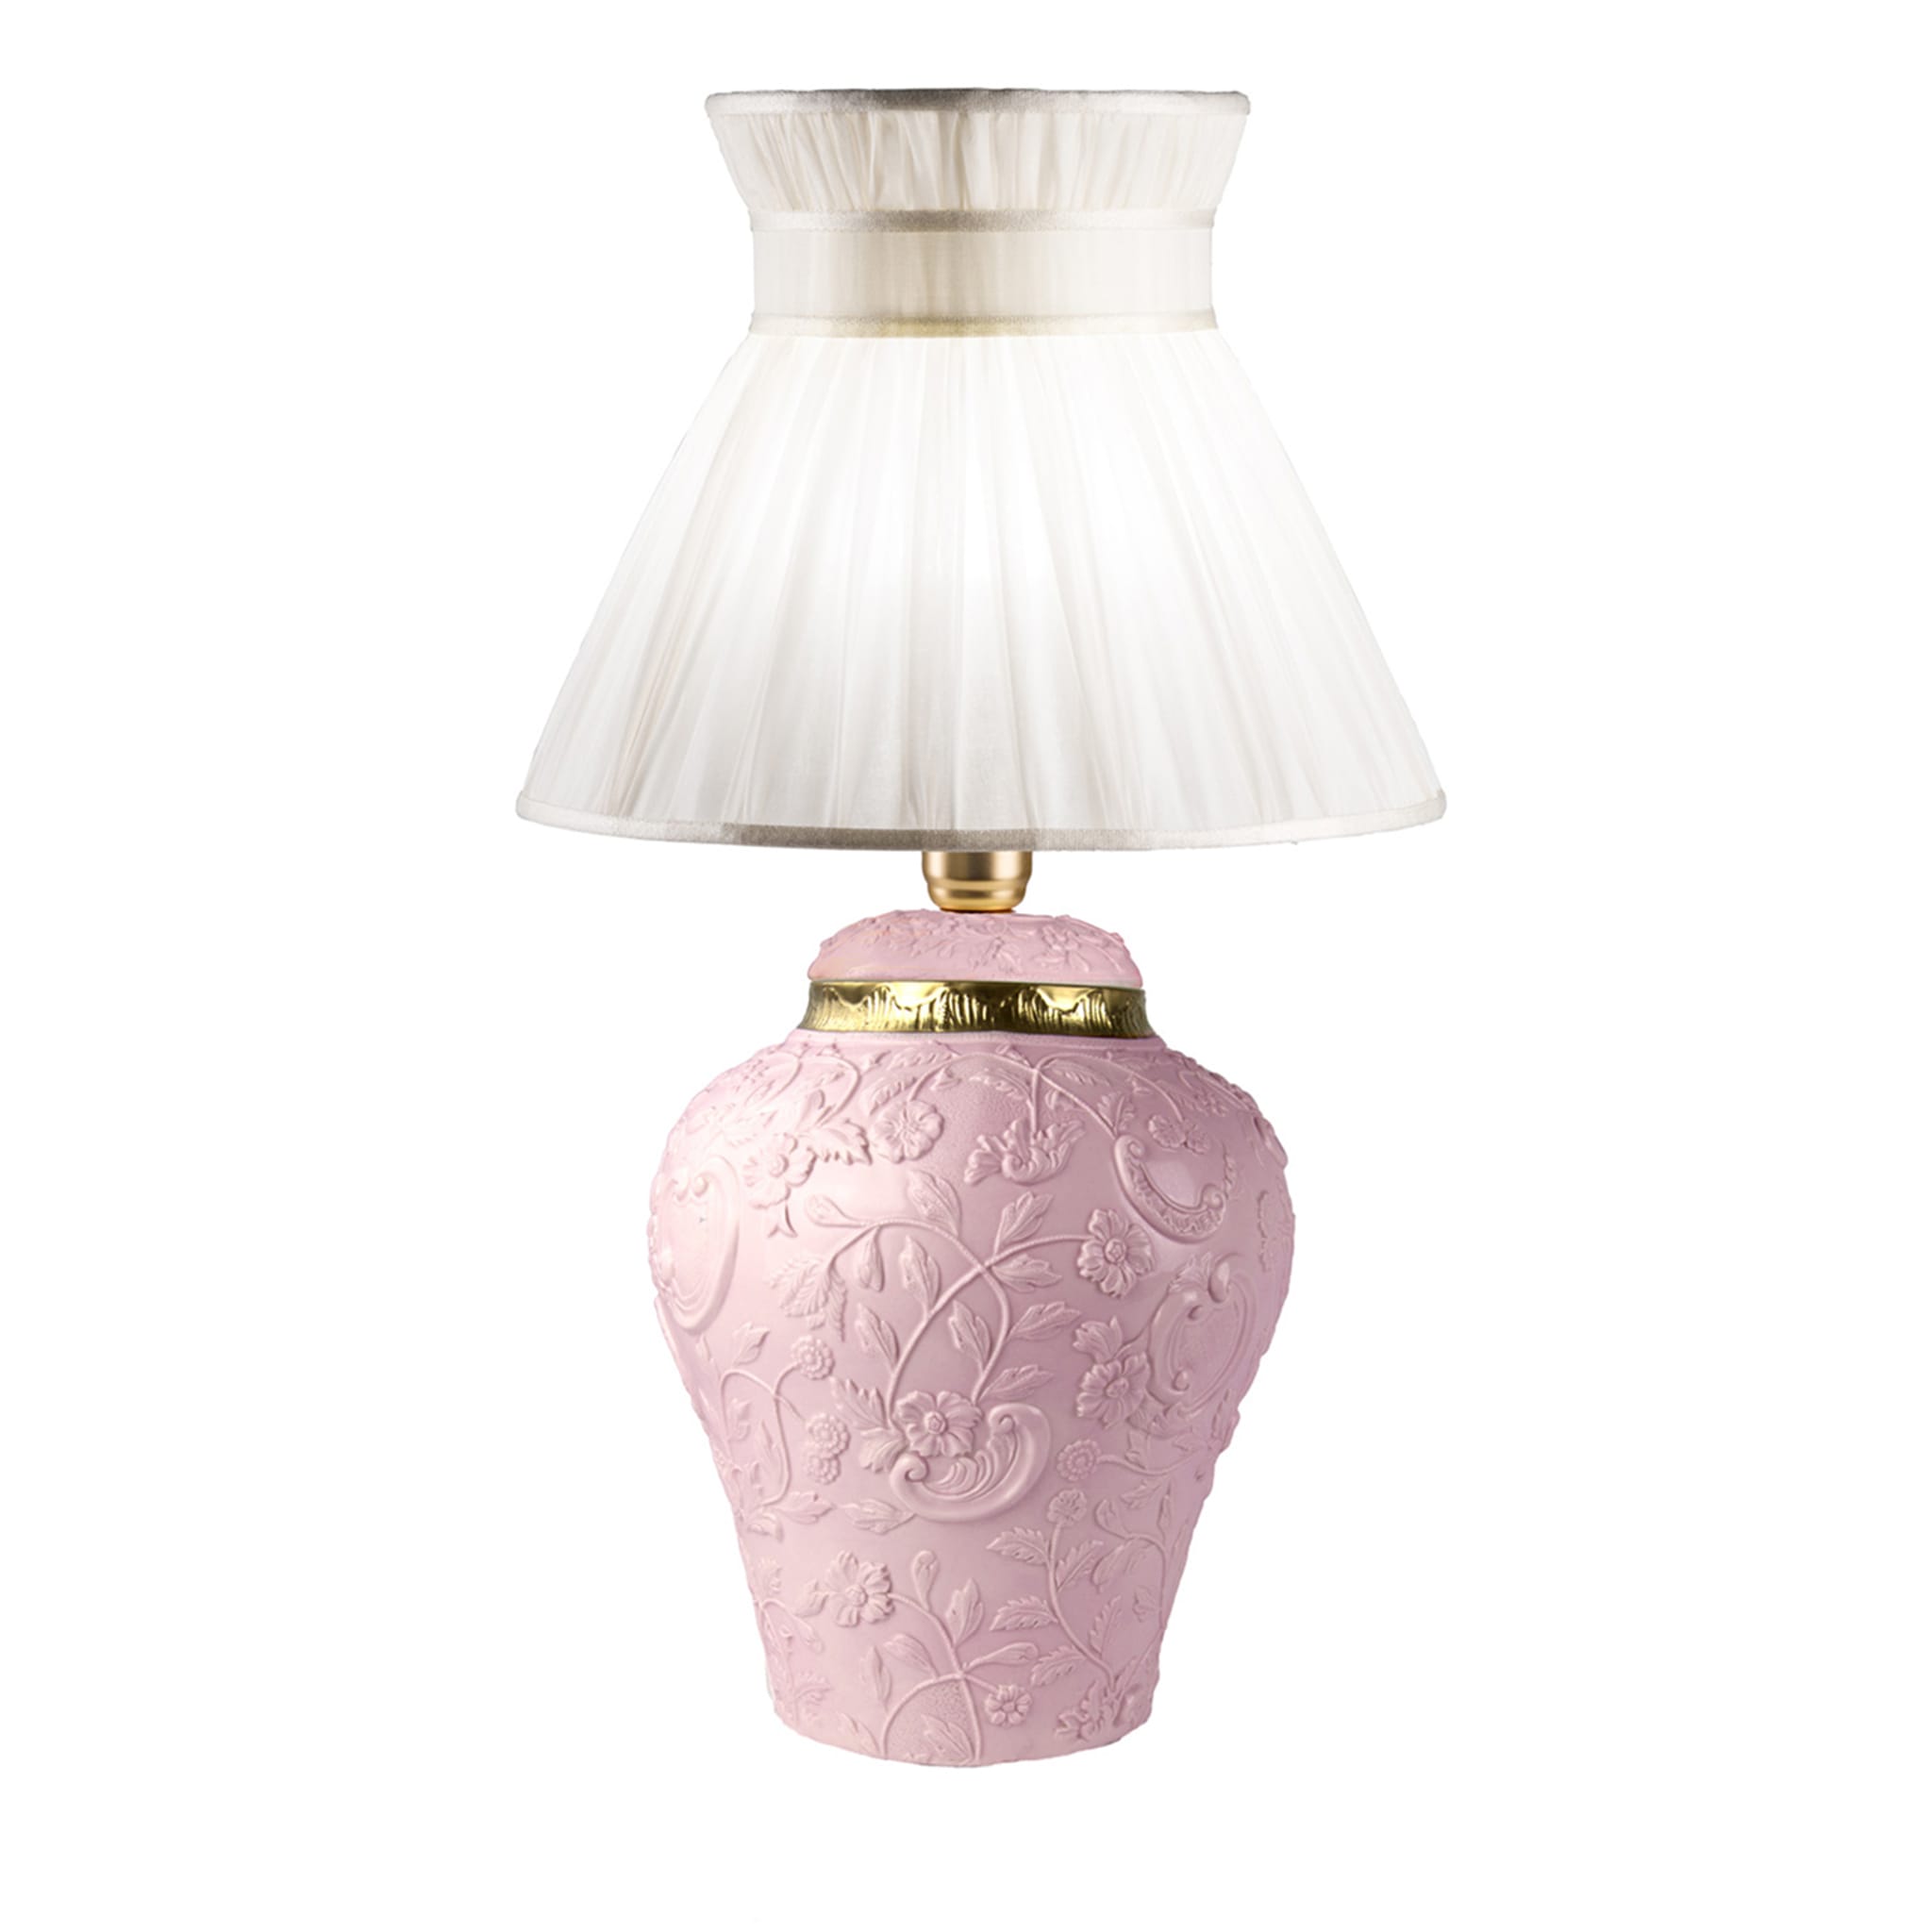 Petite lampe à poser rose Taormina - Vue principale